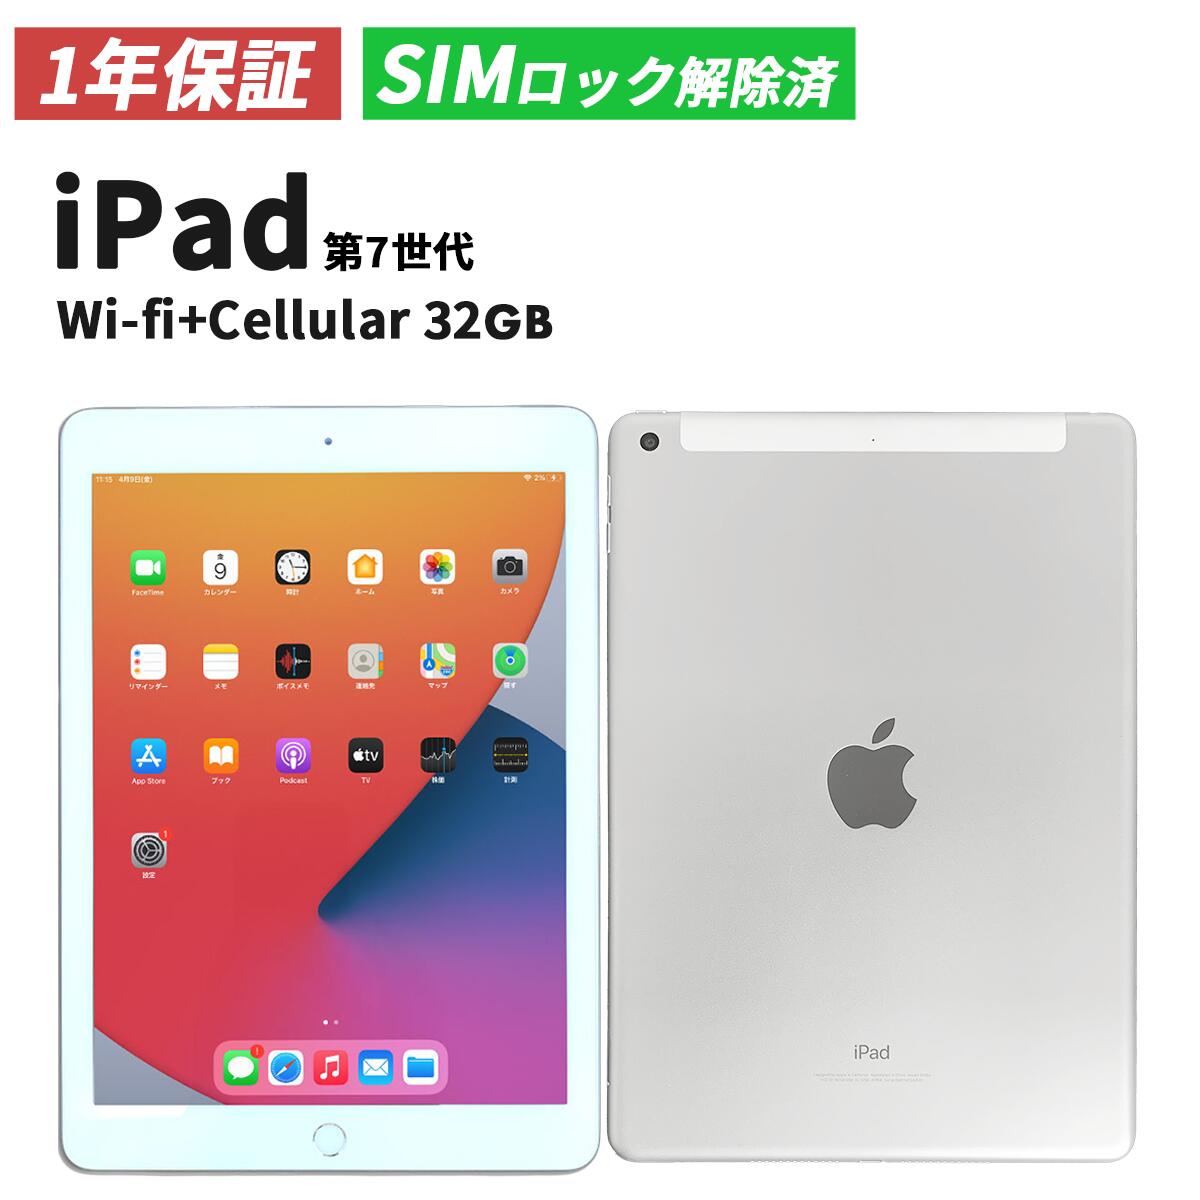 【1年保証／送料無料】iPad 第7世代 (2019年モデル) Wi-fi + cellular 32GB シルバー SIMロック解除済み  A2198【中古】| アイパッド アイパット アップル apple タブレット おすすめ 本体 中古iPad 送料無料 Apple タブレット 中古  7th |